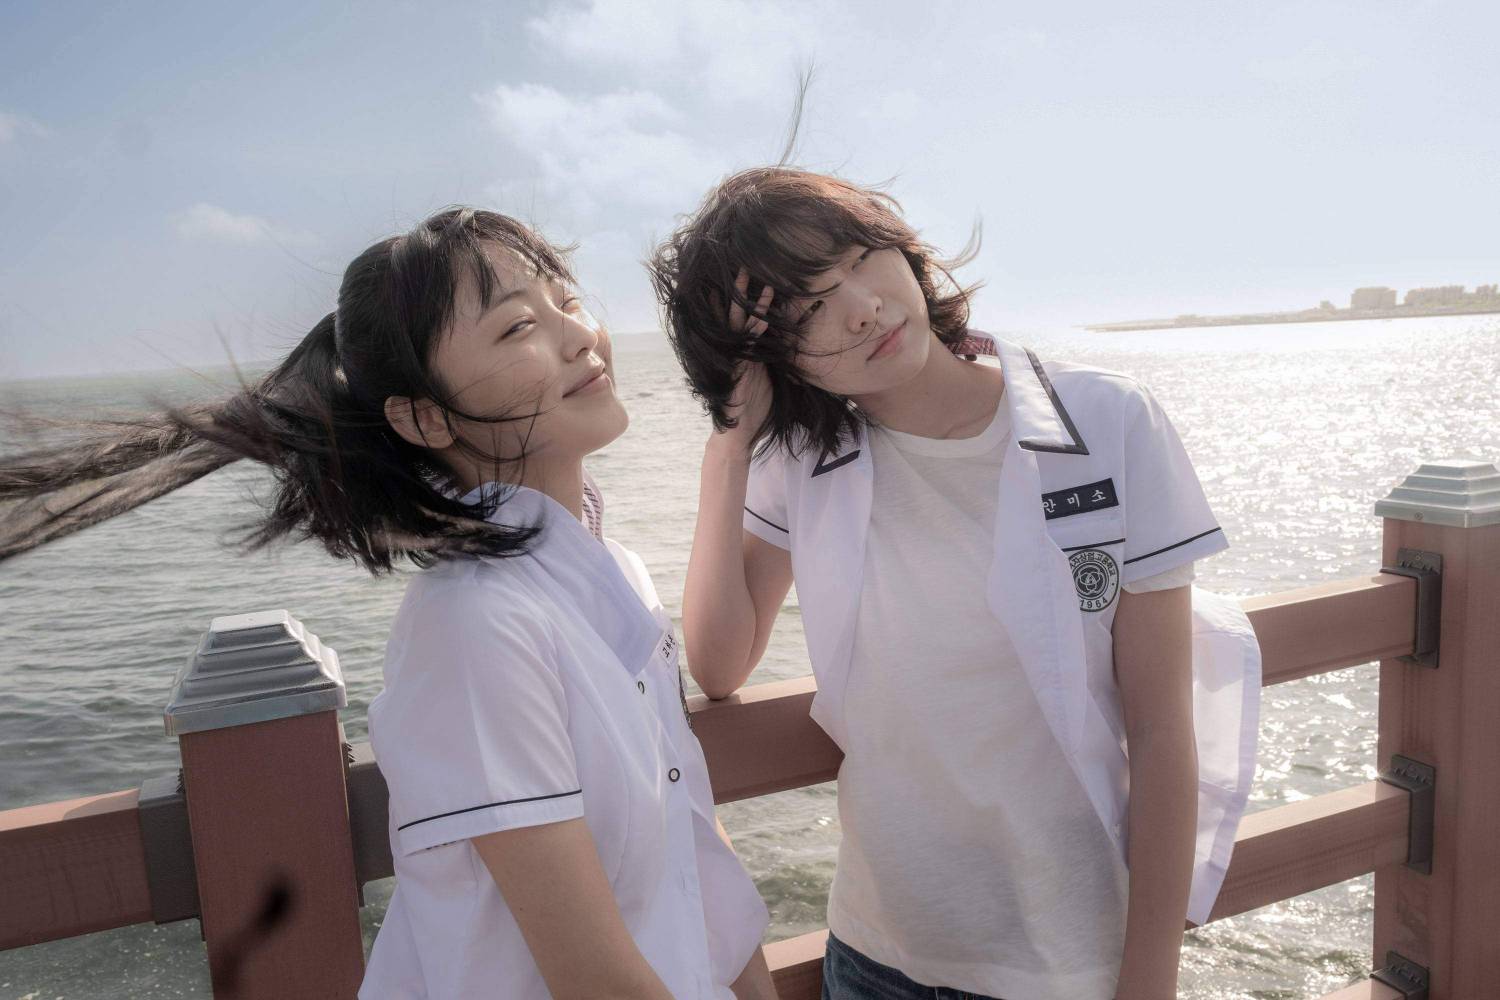 Nhan sắc trong veo của bộ đôi nữ diễn viên phim Hàn ‘Tri kỷ’ - Ảnh 9.